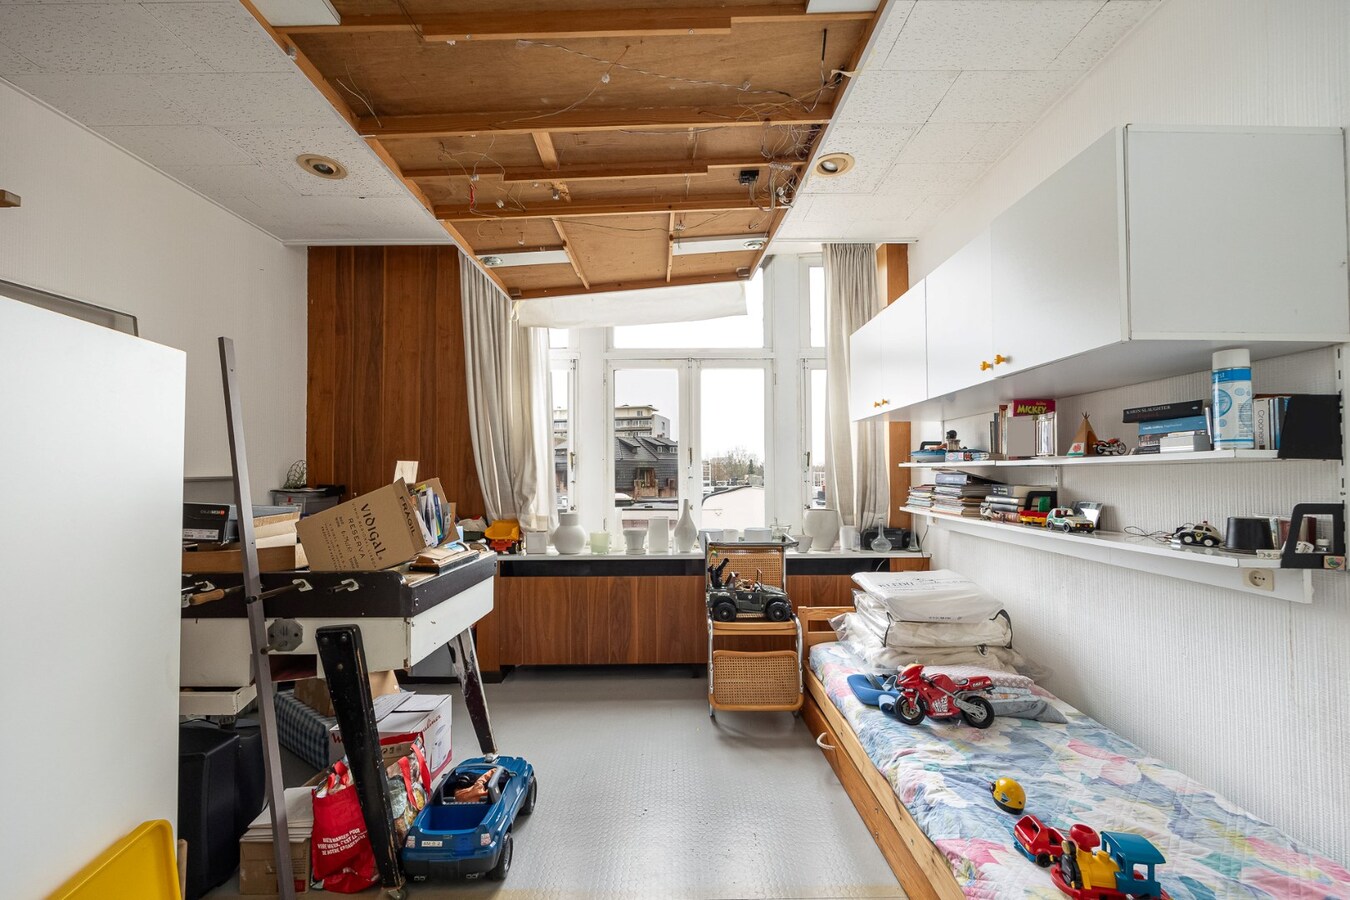 Ruim appartement met terras, garage en 3 slaapkamers in parkwijk Den Brandt 